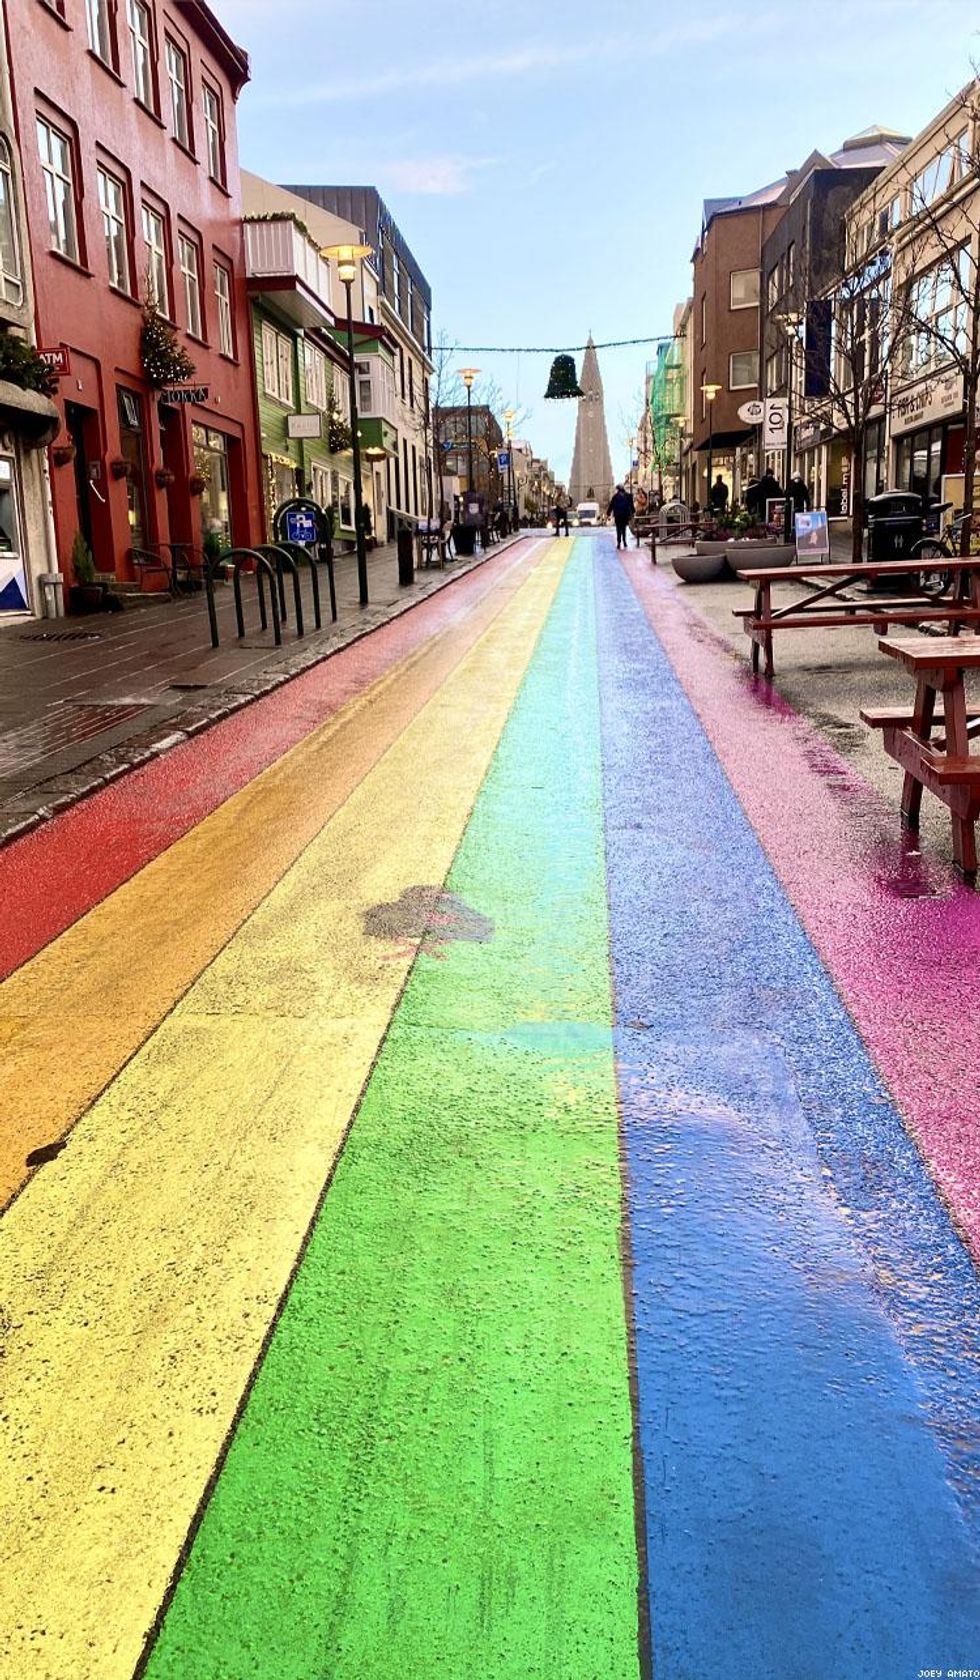 Rainbow road in Reykjavik